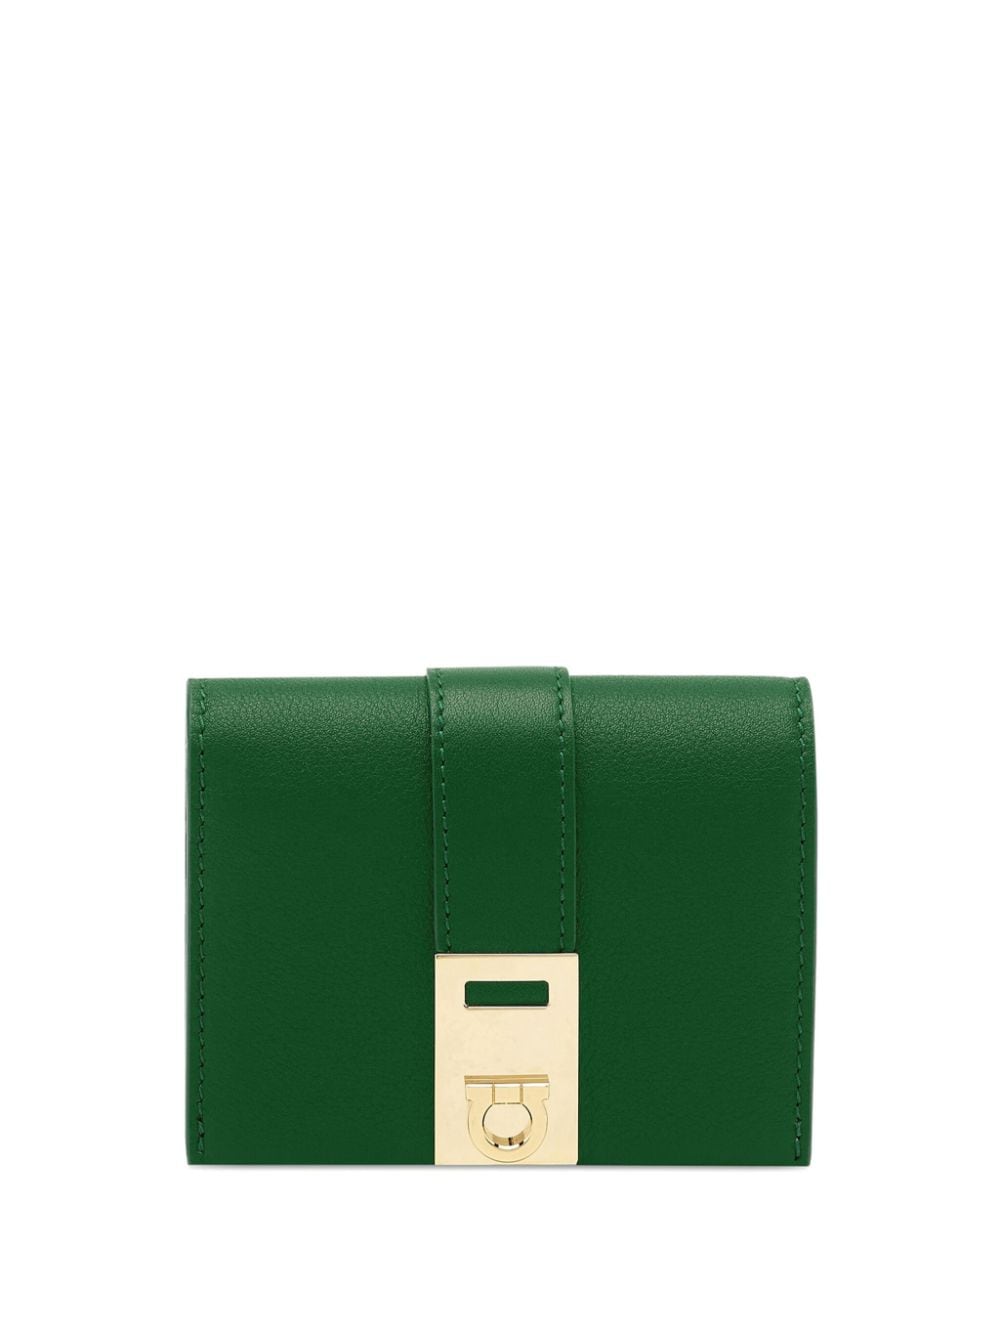 Ferragamo Hug Leather Wallet In Green